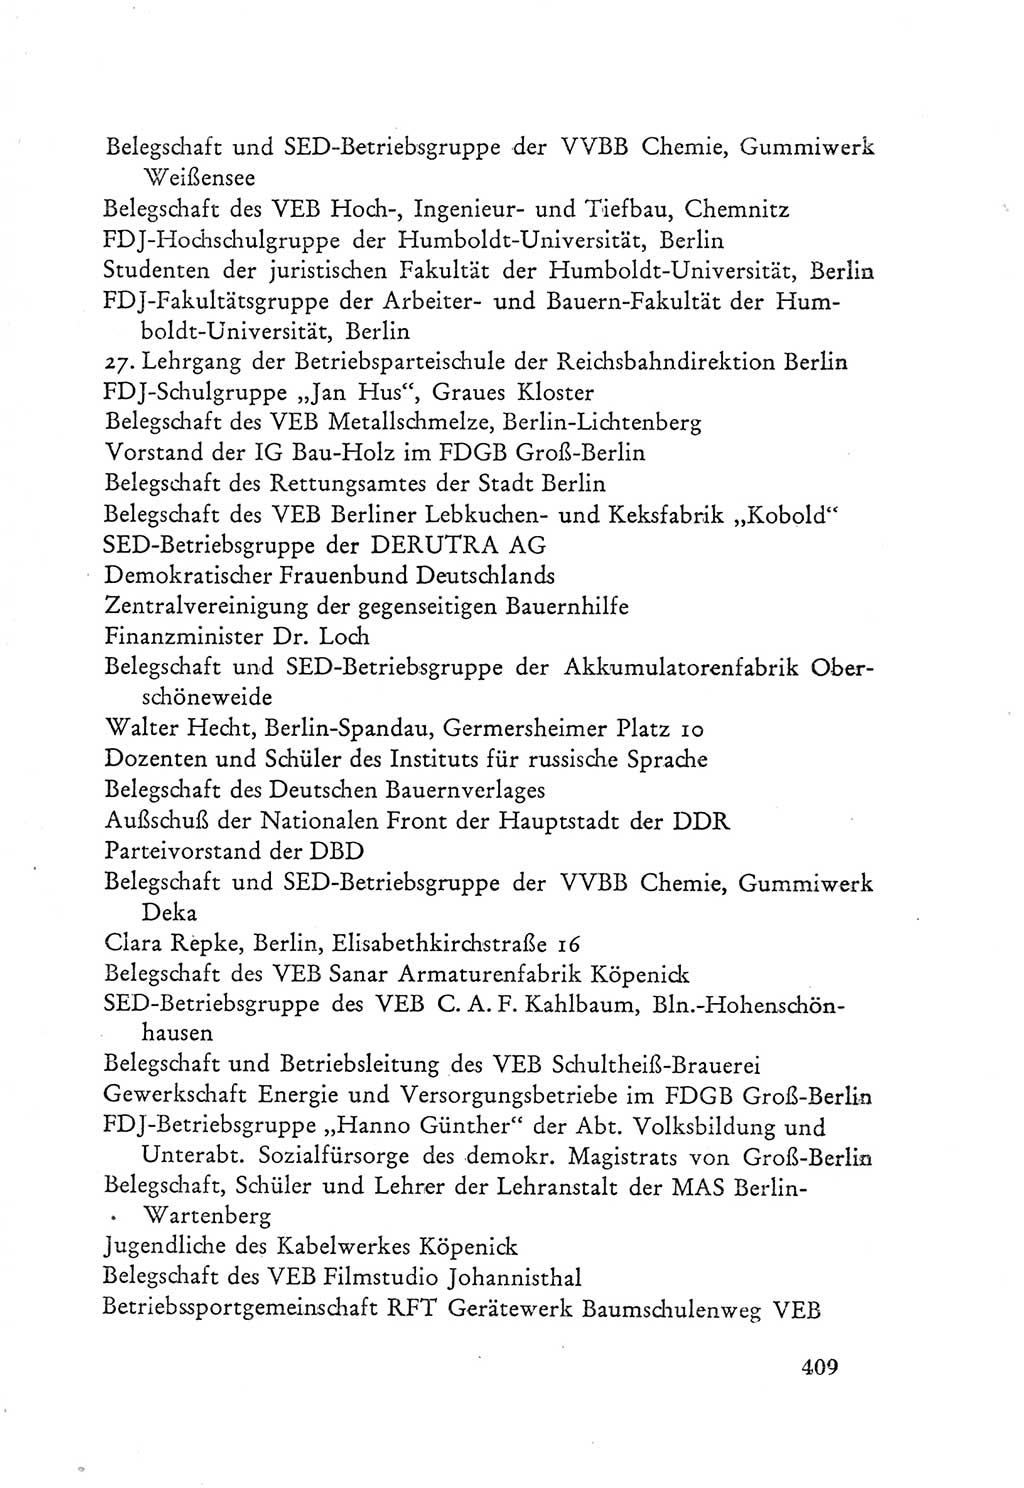 Protokoll der Verhandlungen des Ⅲ. Parteitages der Sozialistischen Einheitspartei Deutschlands (SED) [Deutsche Demokratische Republik (DDR)] 1950, Band 2, Seite 409 (Prot. Verh. Ⅲ. PT SED DDR 1950, Bd. 2, S. 409)